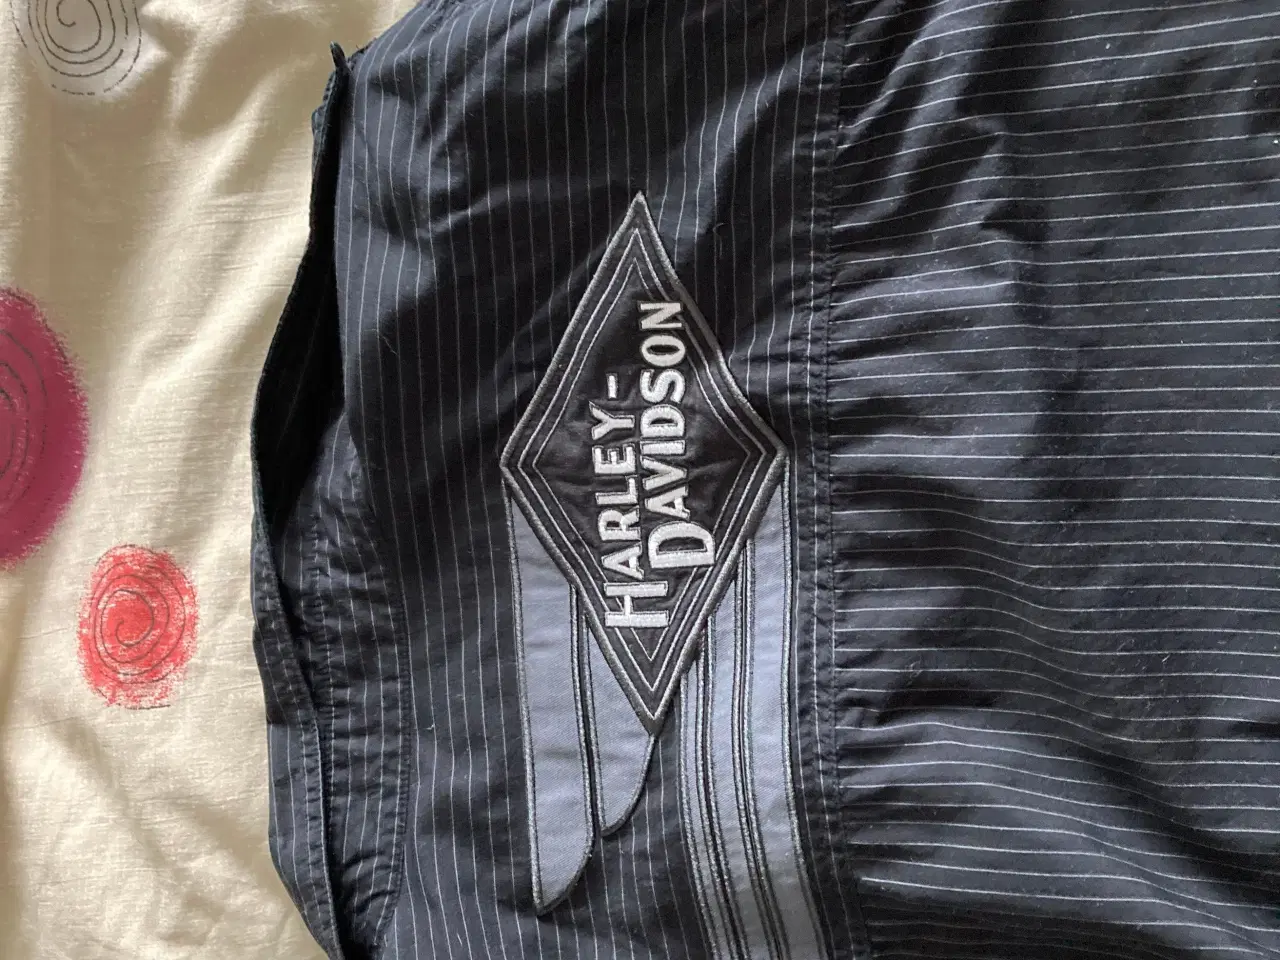 Billede 6 - Harley Davidson skjorter med logo